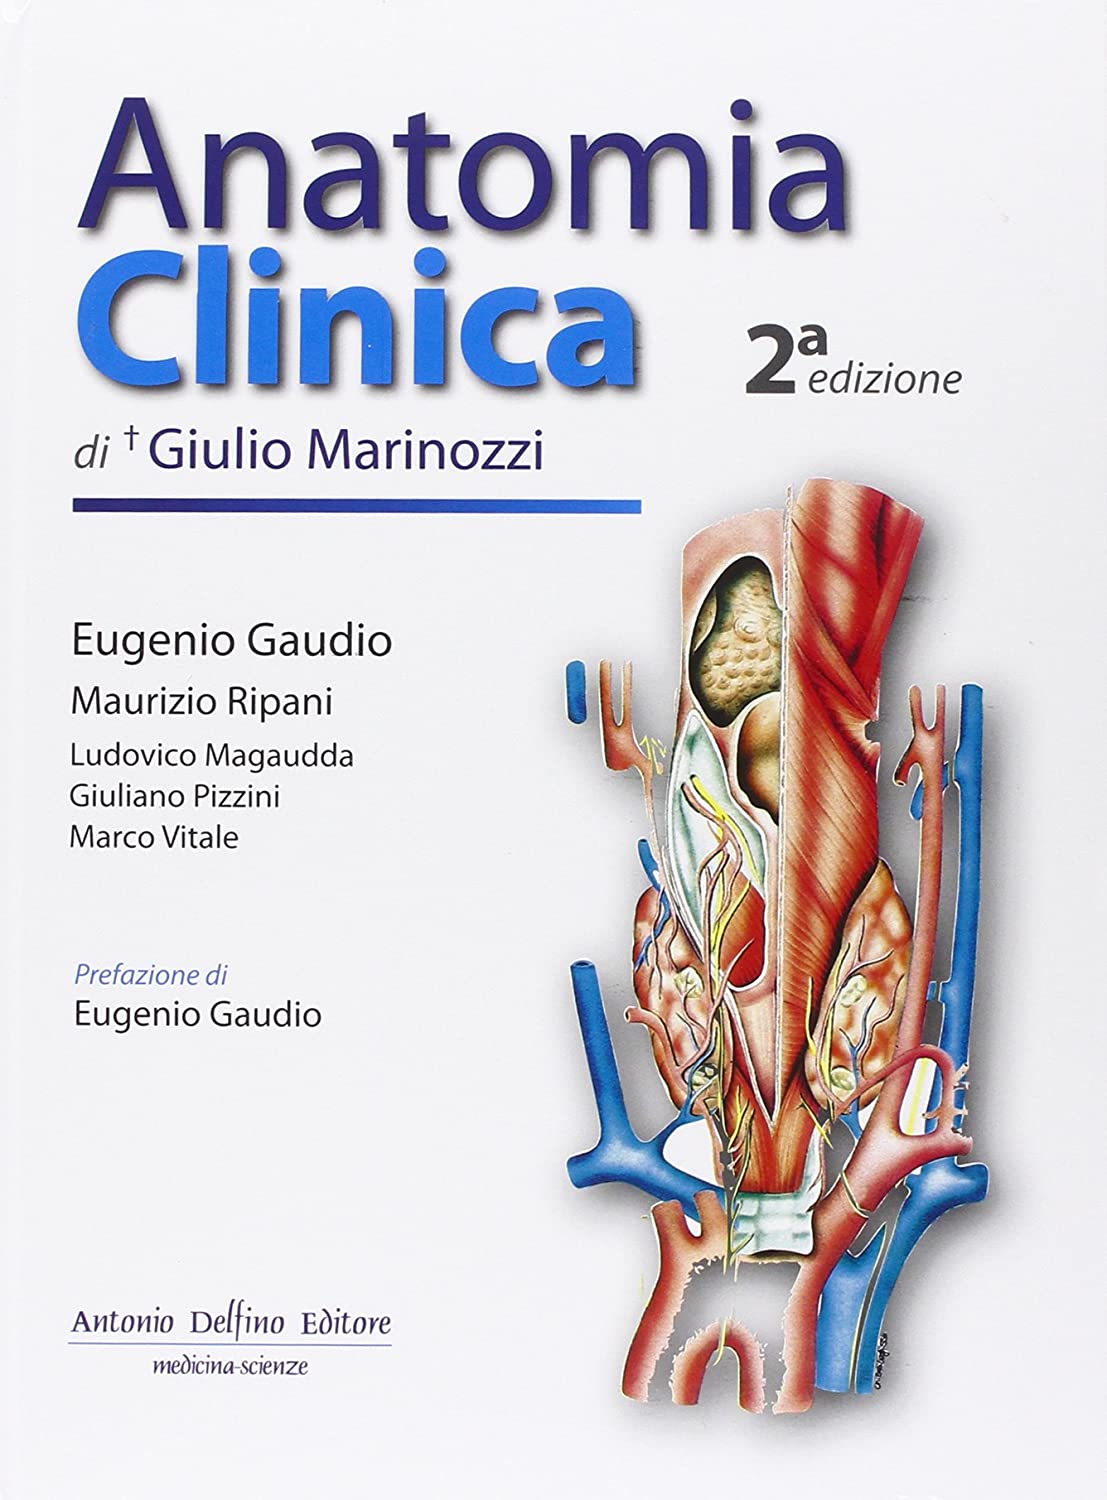 Libri Giulio Marinozzi - Anatomia Clinica NUOVO SIGILLATO, EDIZIONE DEL 25/11/2011 SUBITO DISPONIBILE